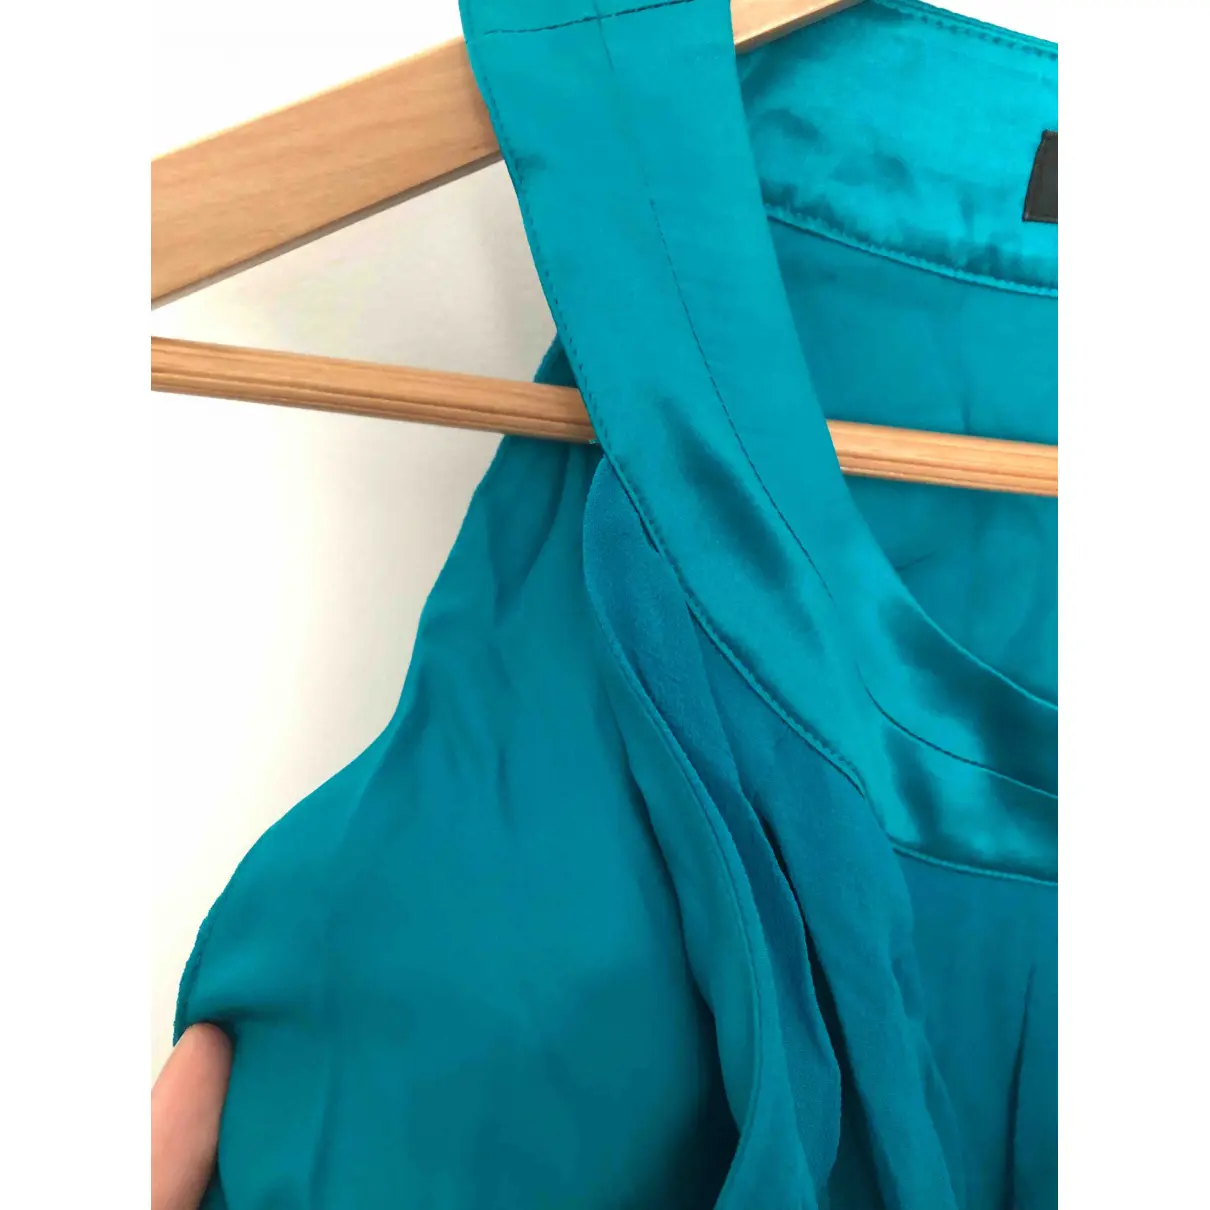 Silk mid-length dress Georges Rech